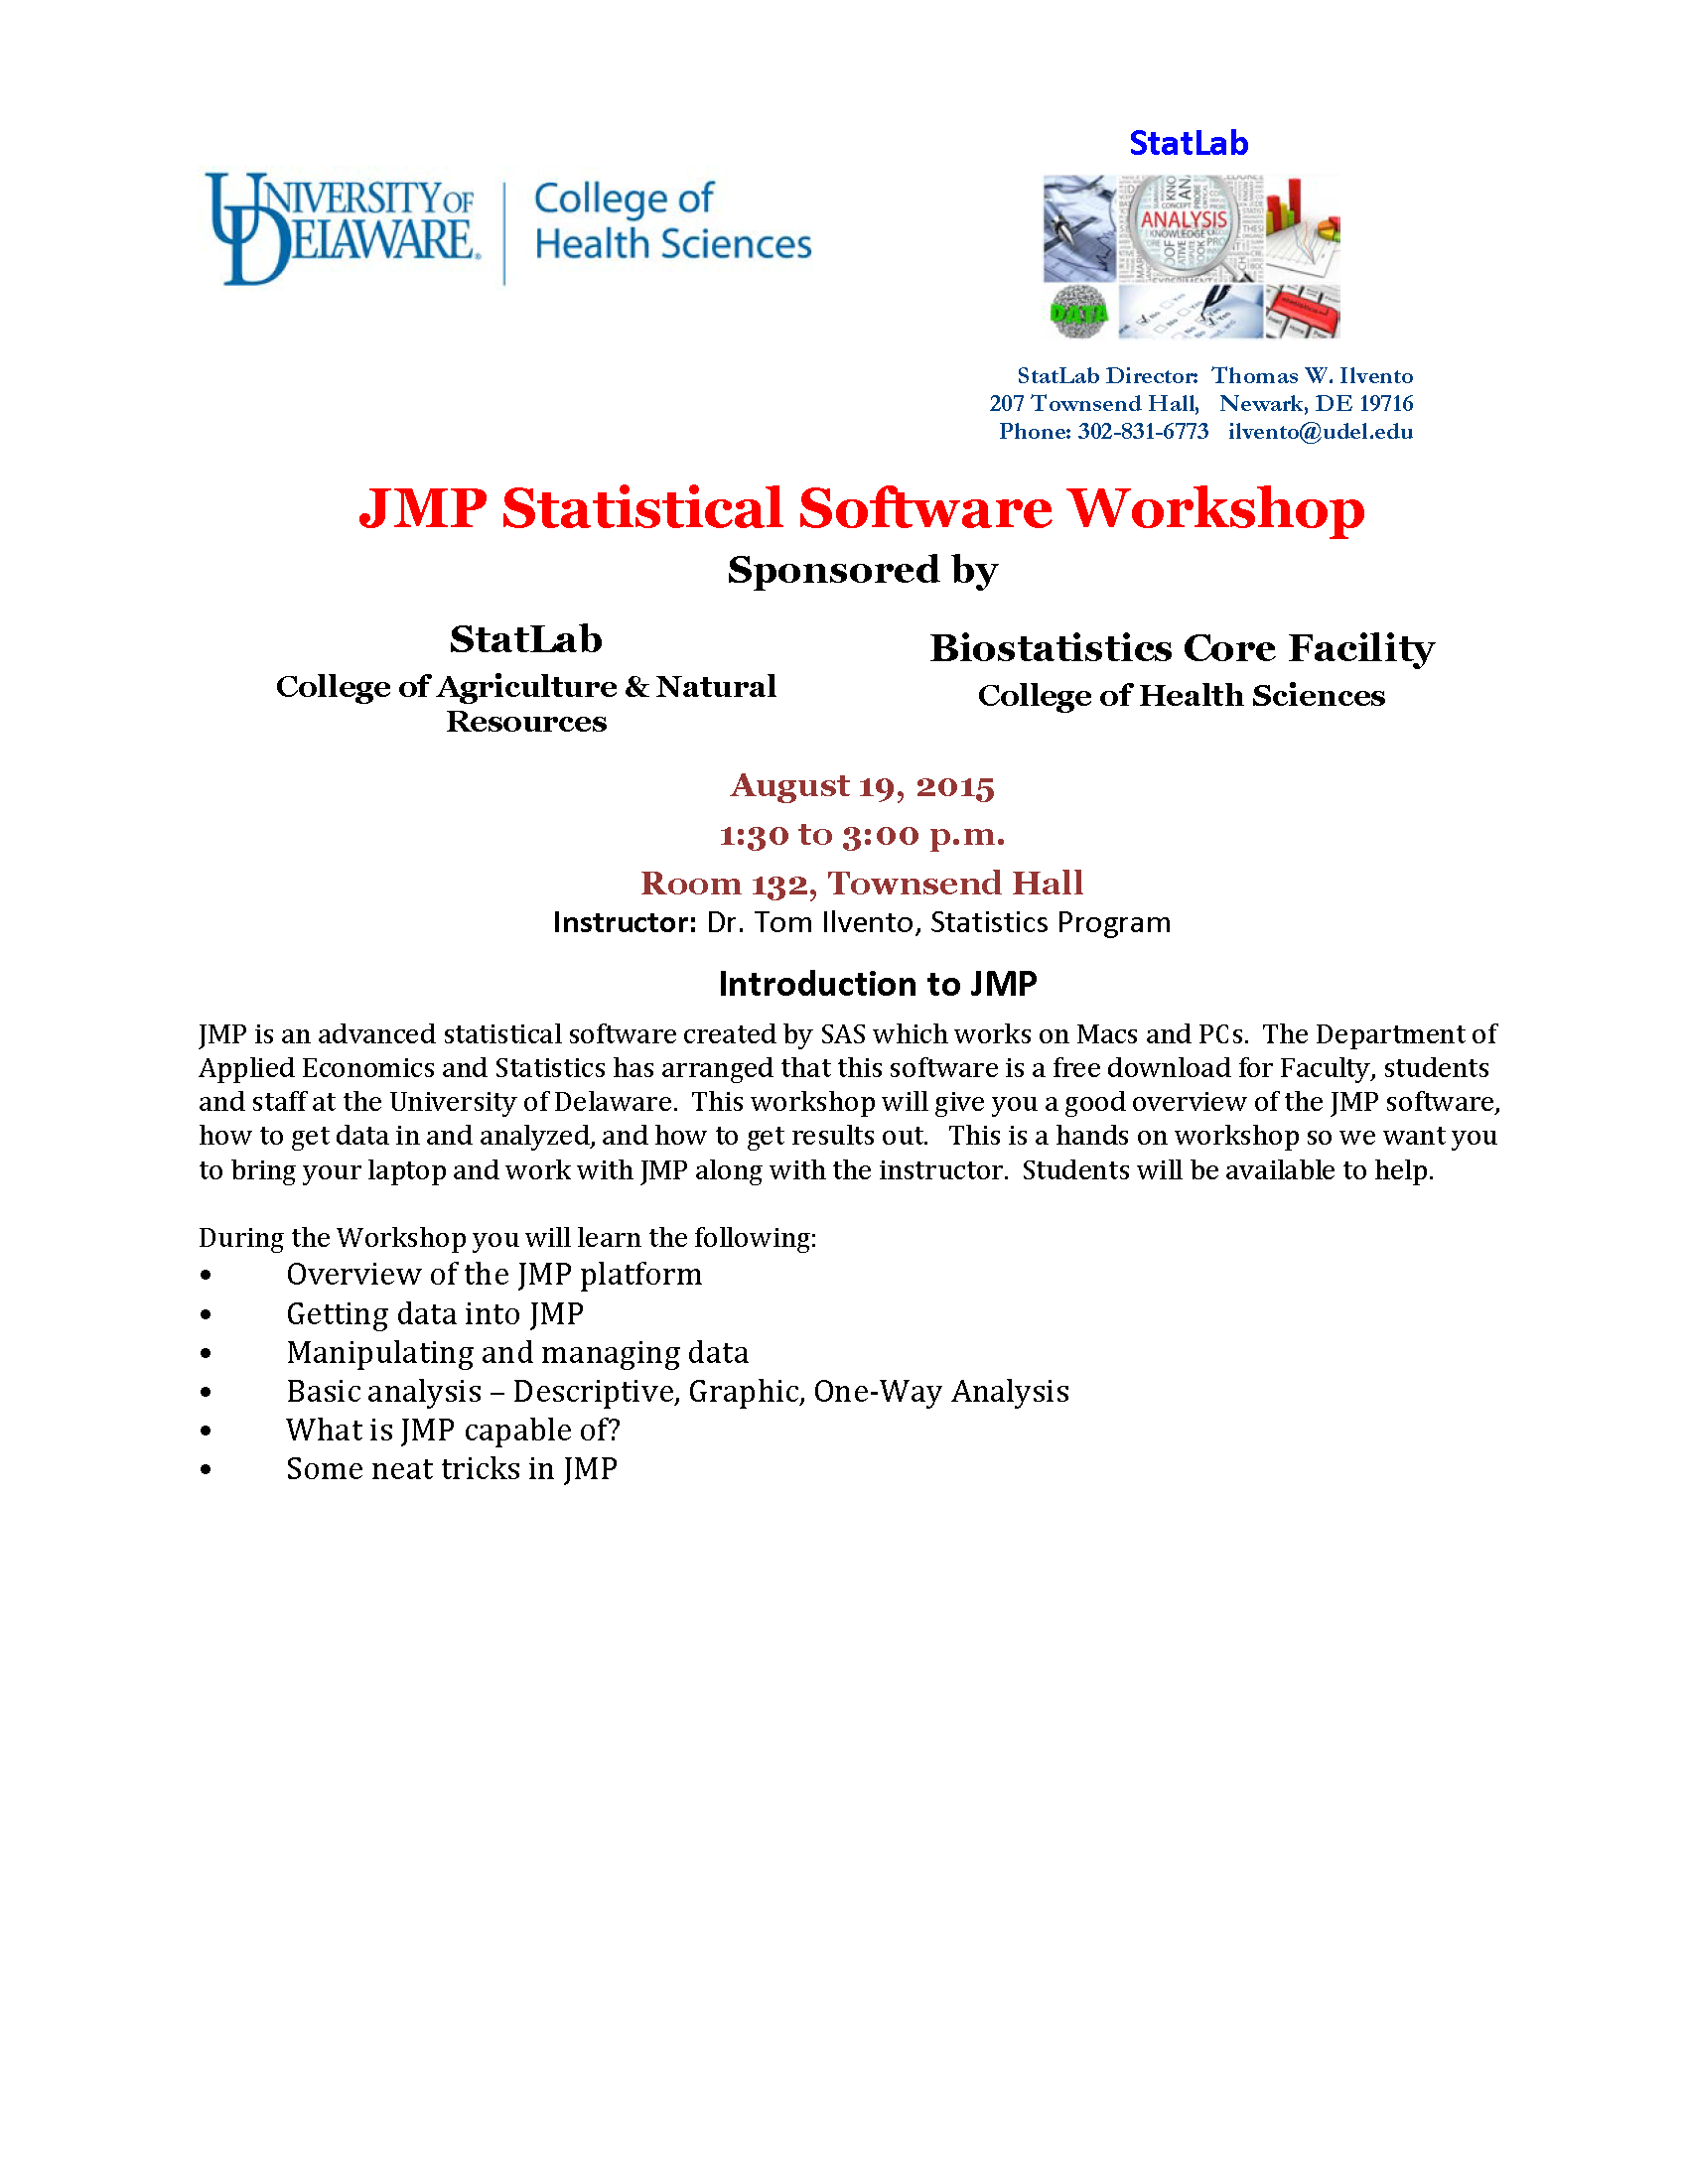 JMP Workshop Flyer 2015